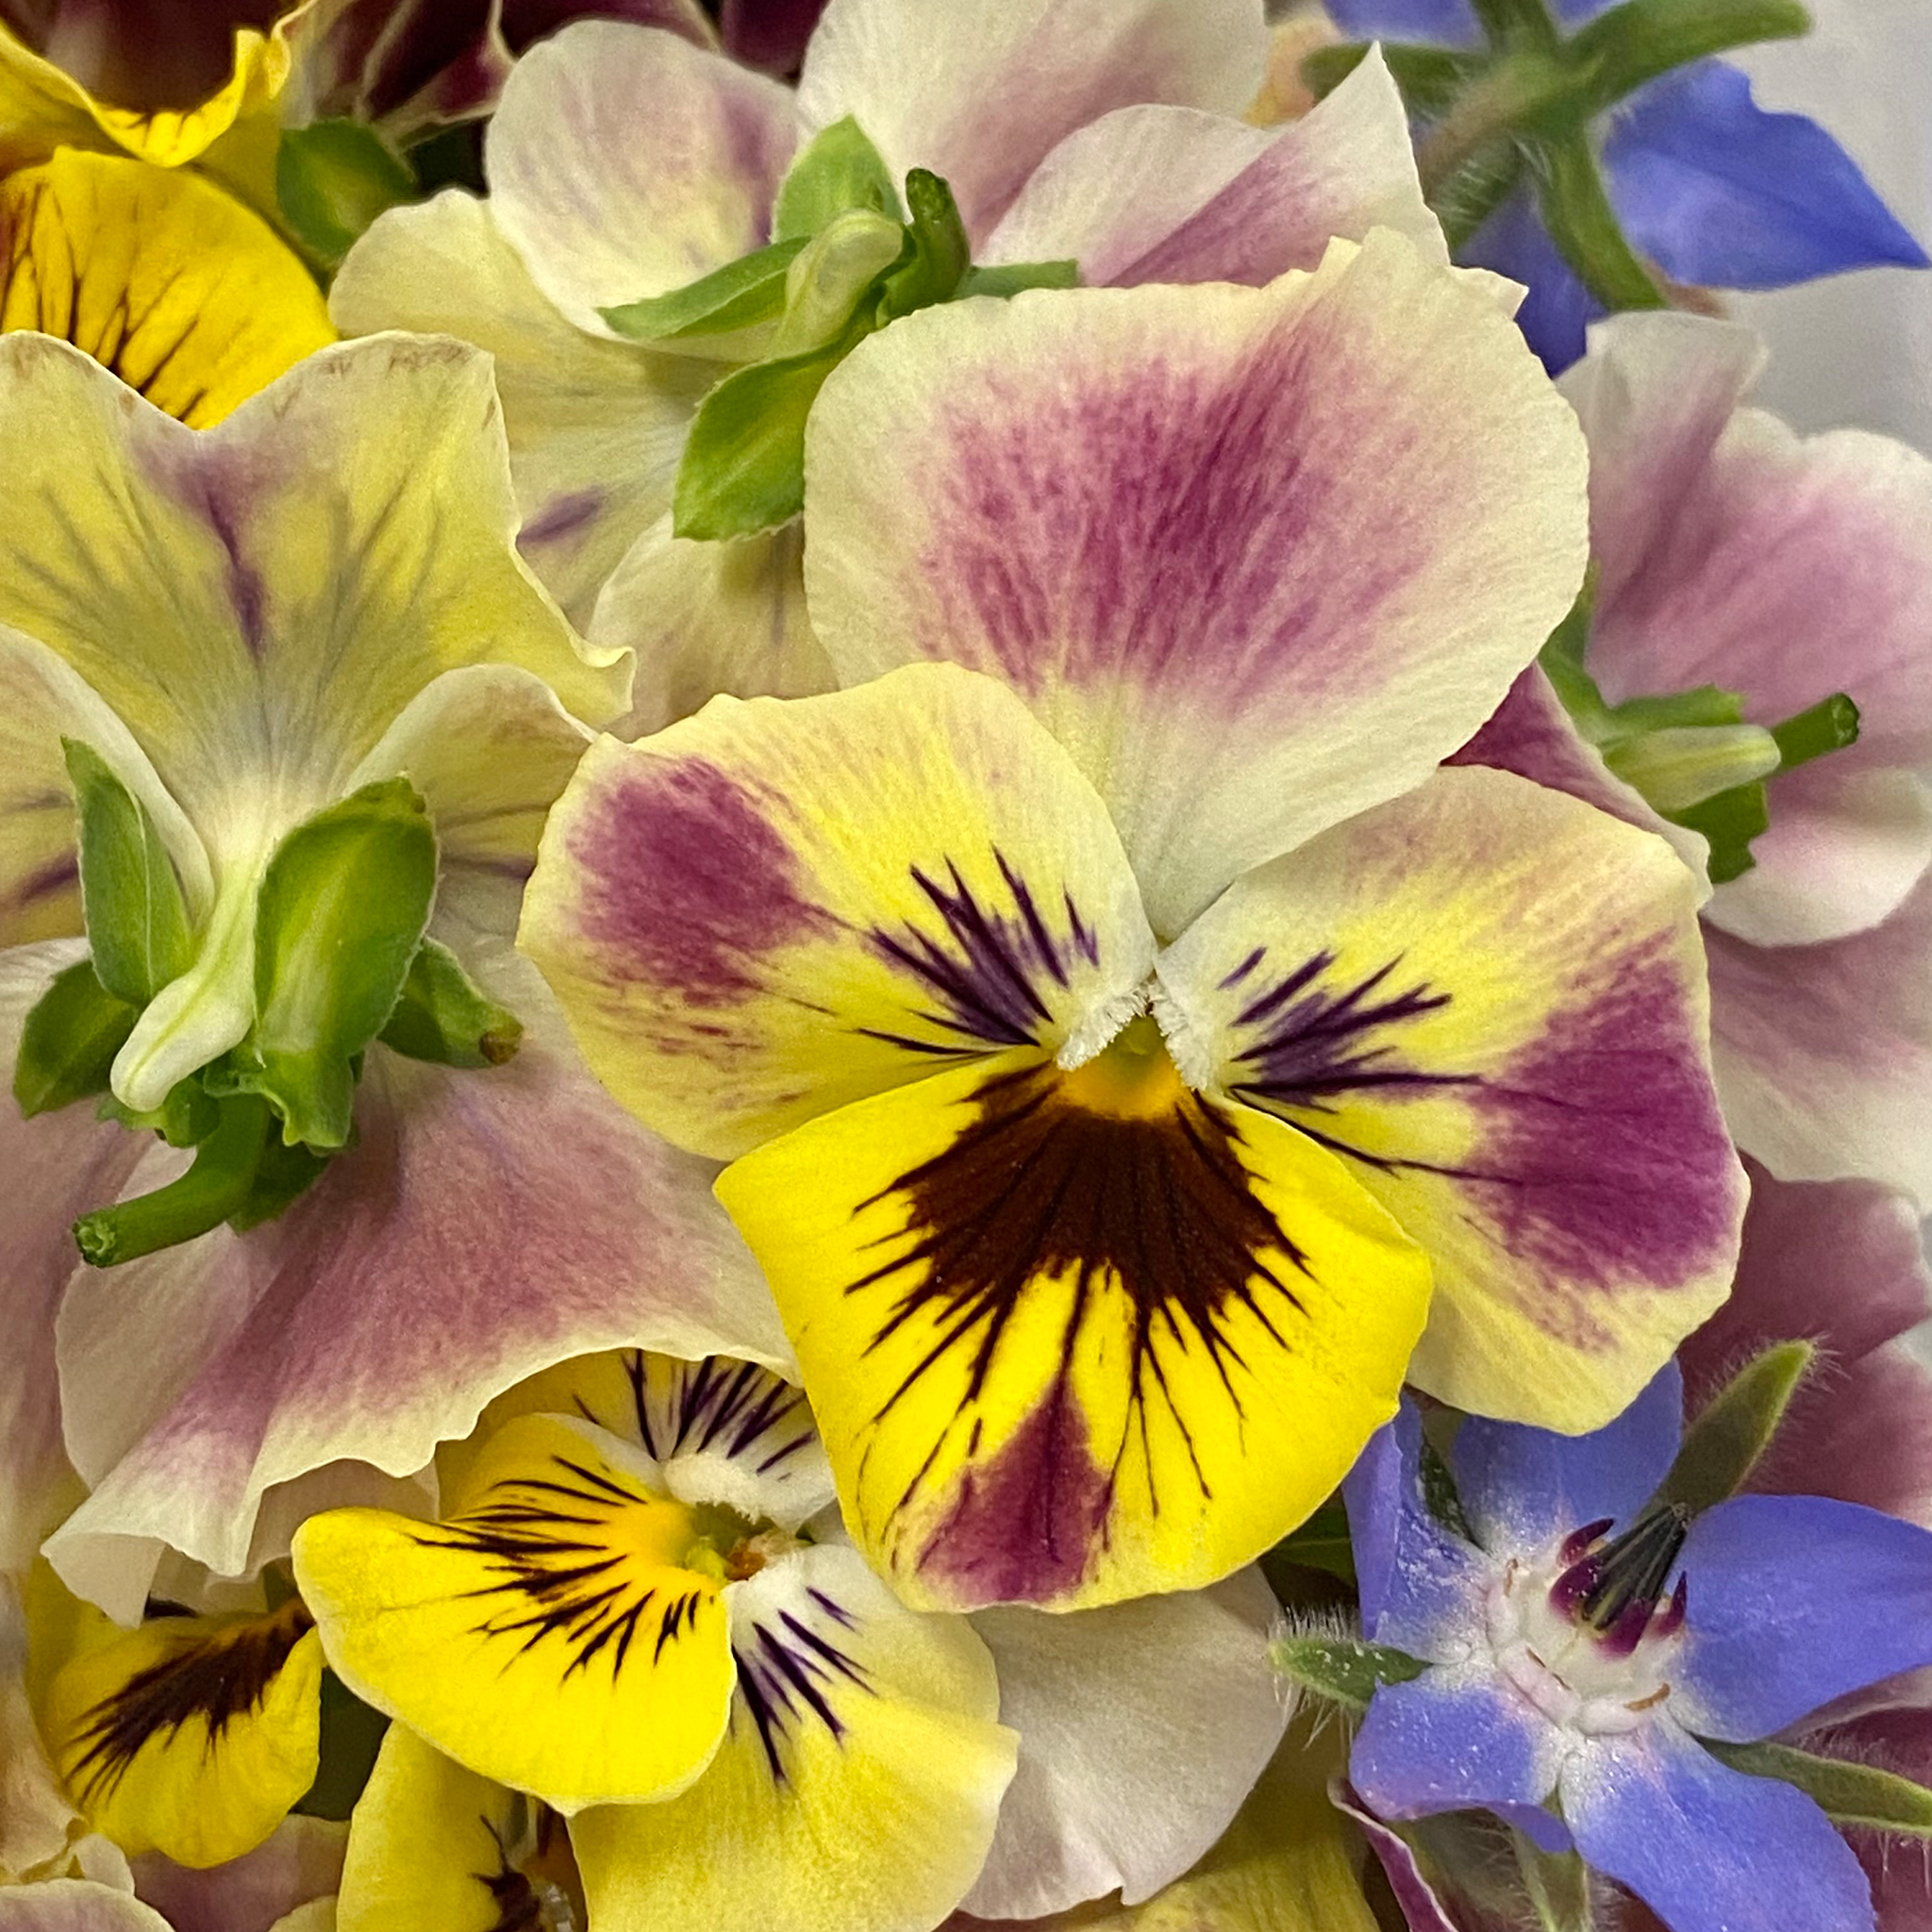 Edible Flowers - Violas